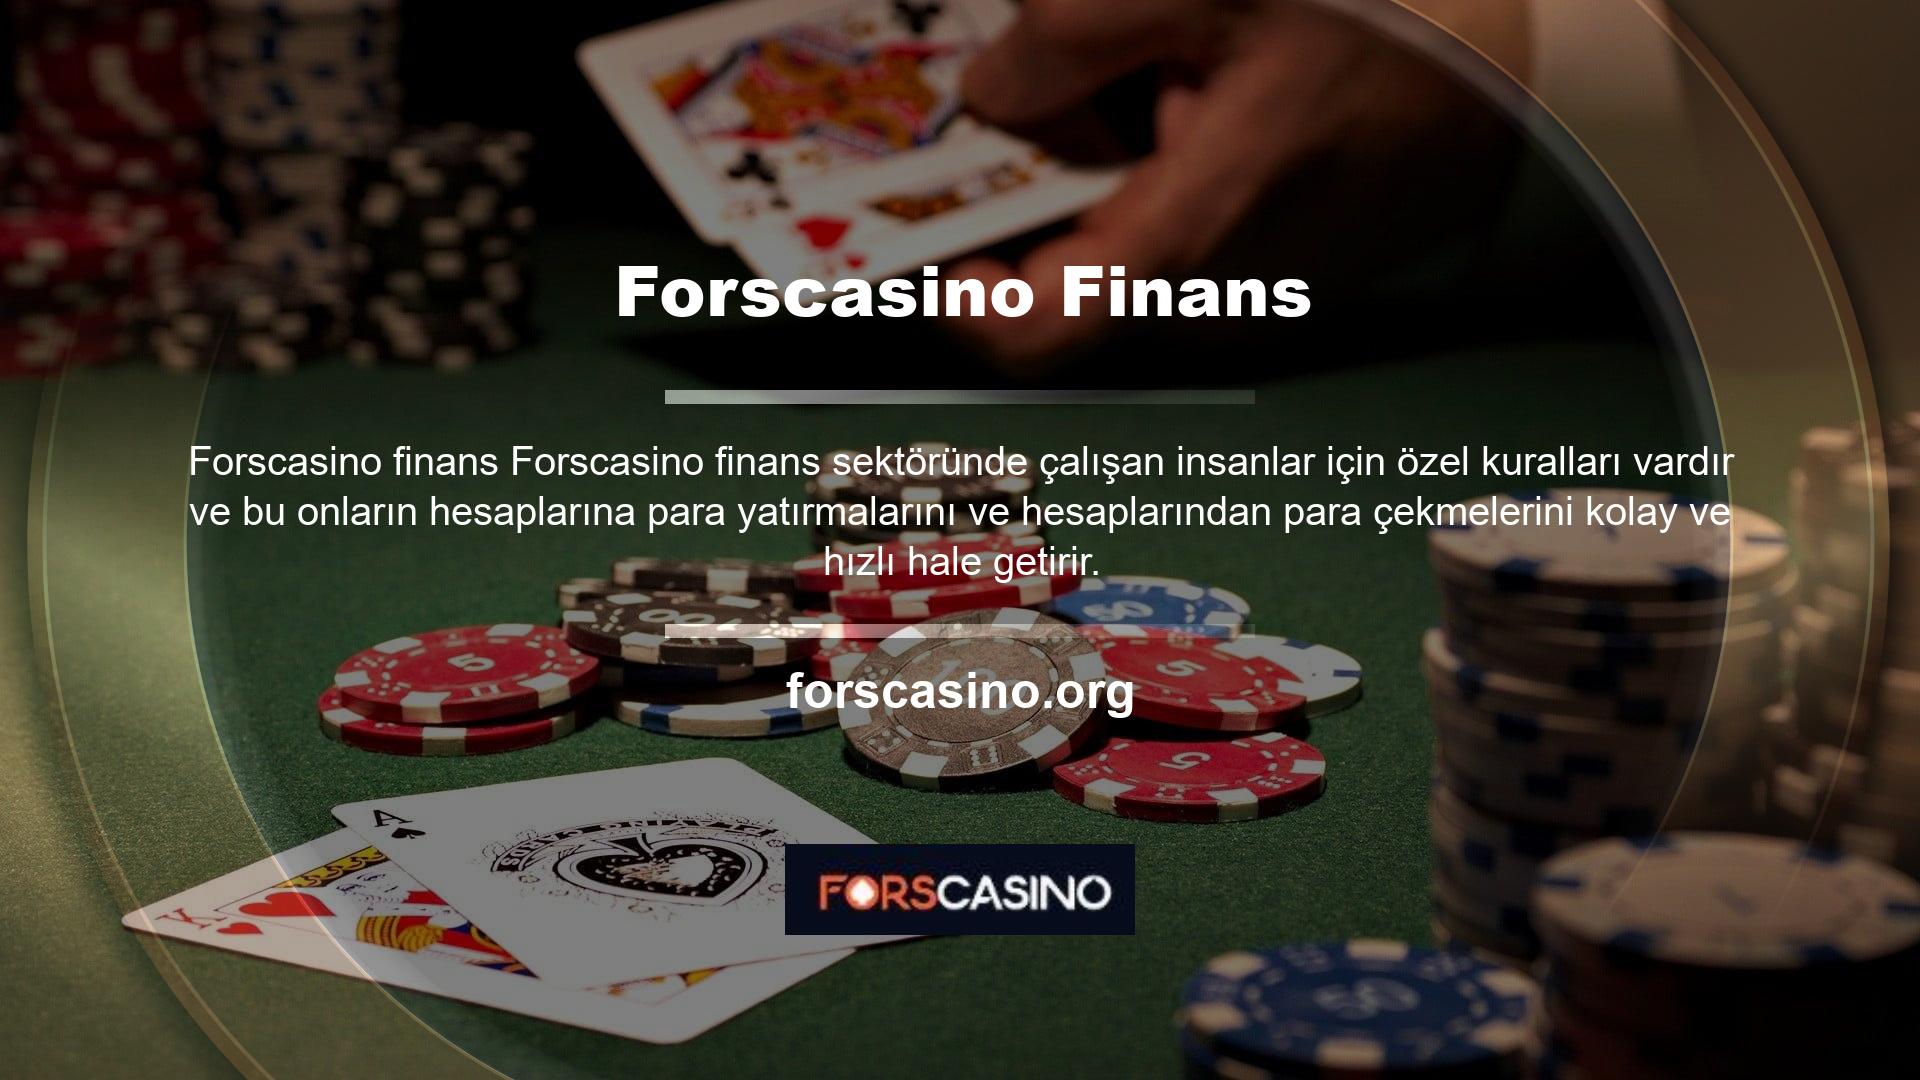 Bu Casino web sitesi ülke dışında bulunmaktadır ve üyelerin paralarının ve işlemlerinin güvenilirliğini kontrol eden Avrupa Casino ve Lisans Komisyonu tarafından denetlenmektedir